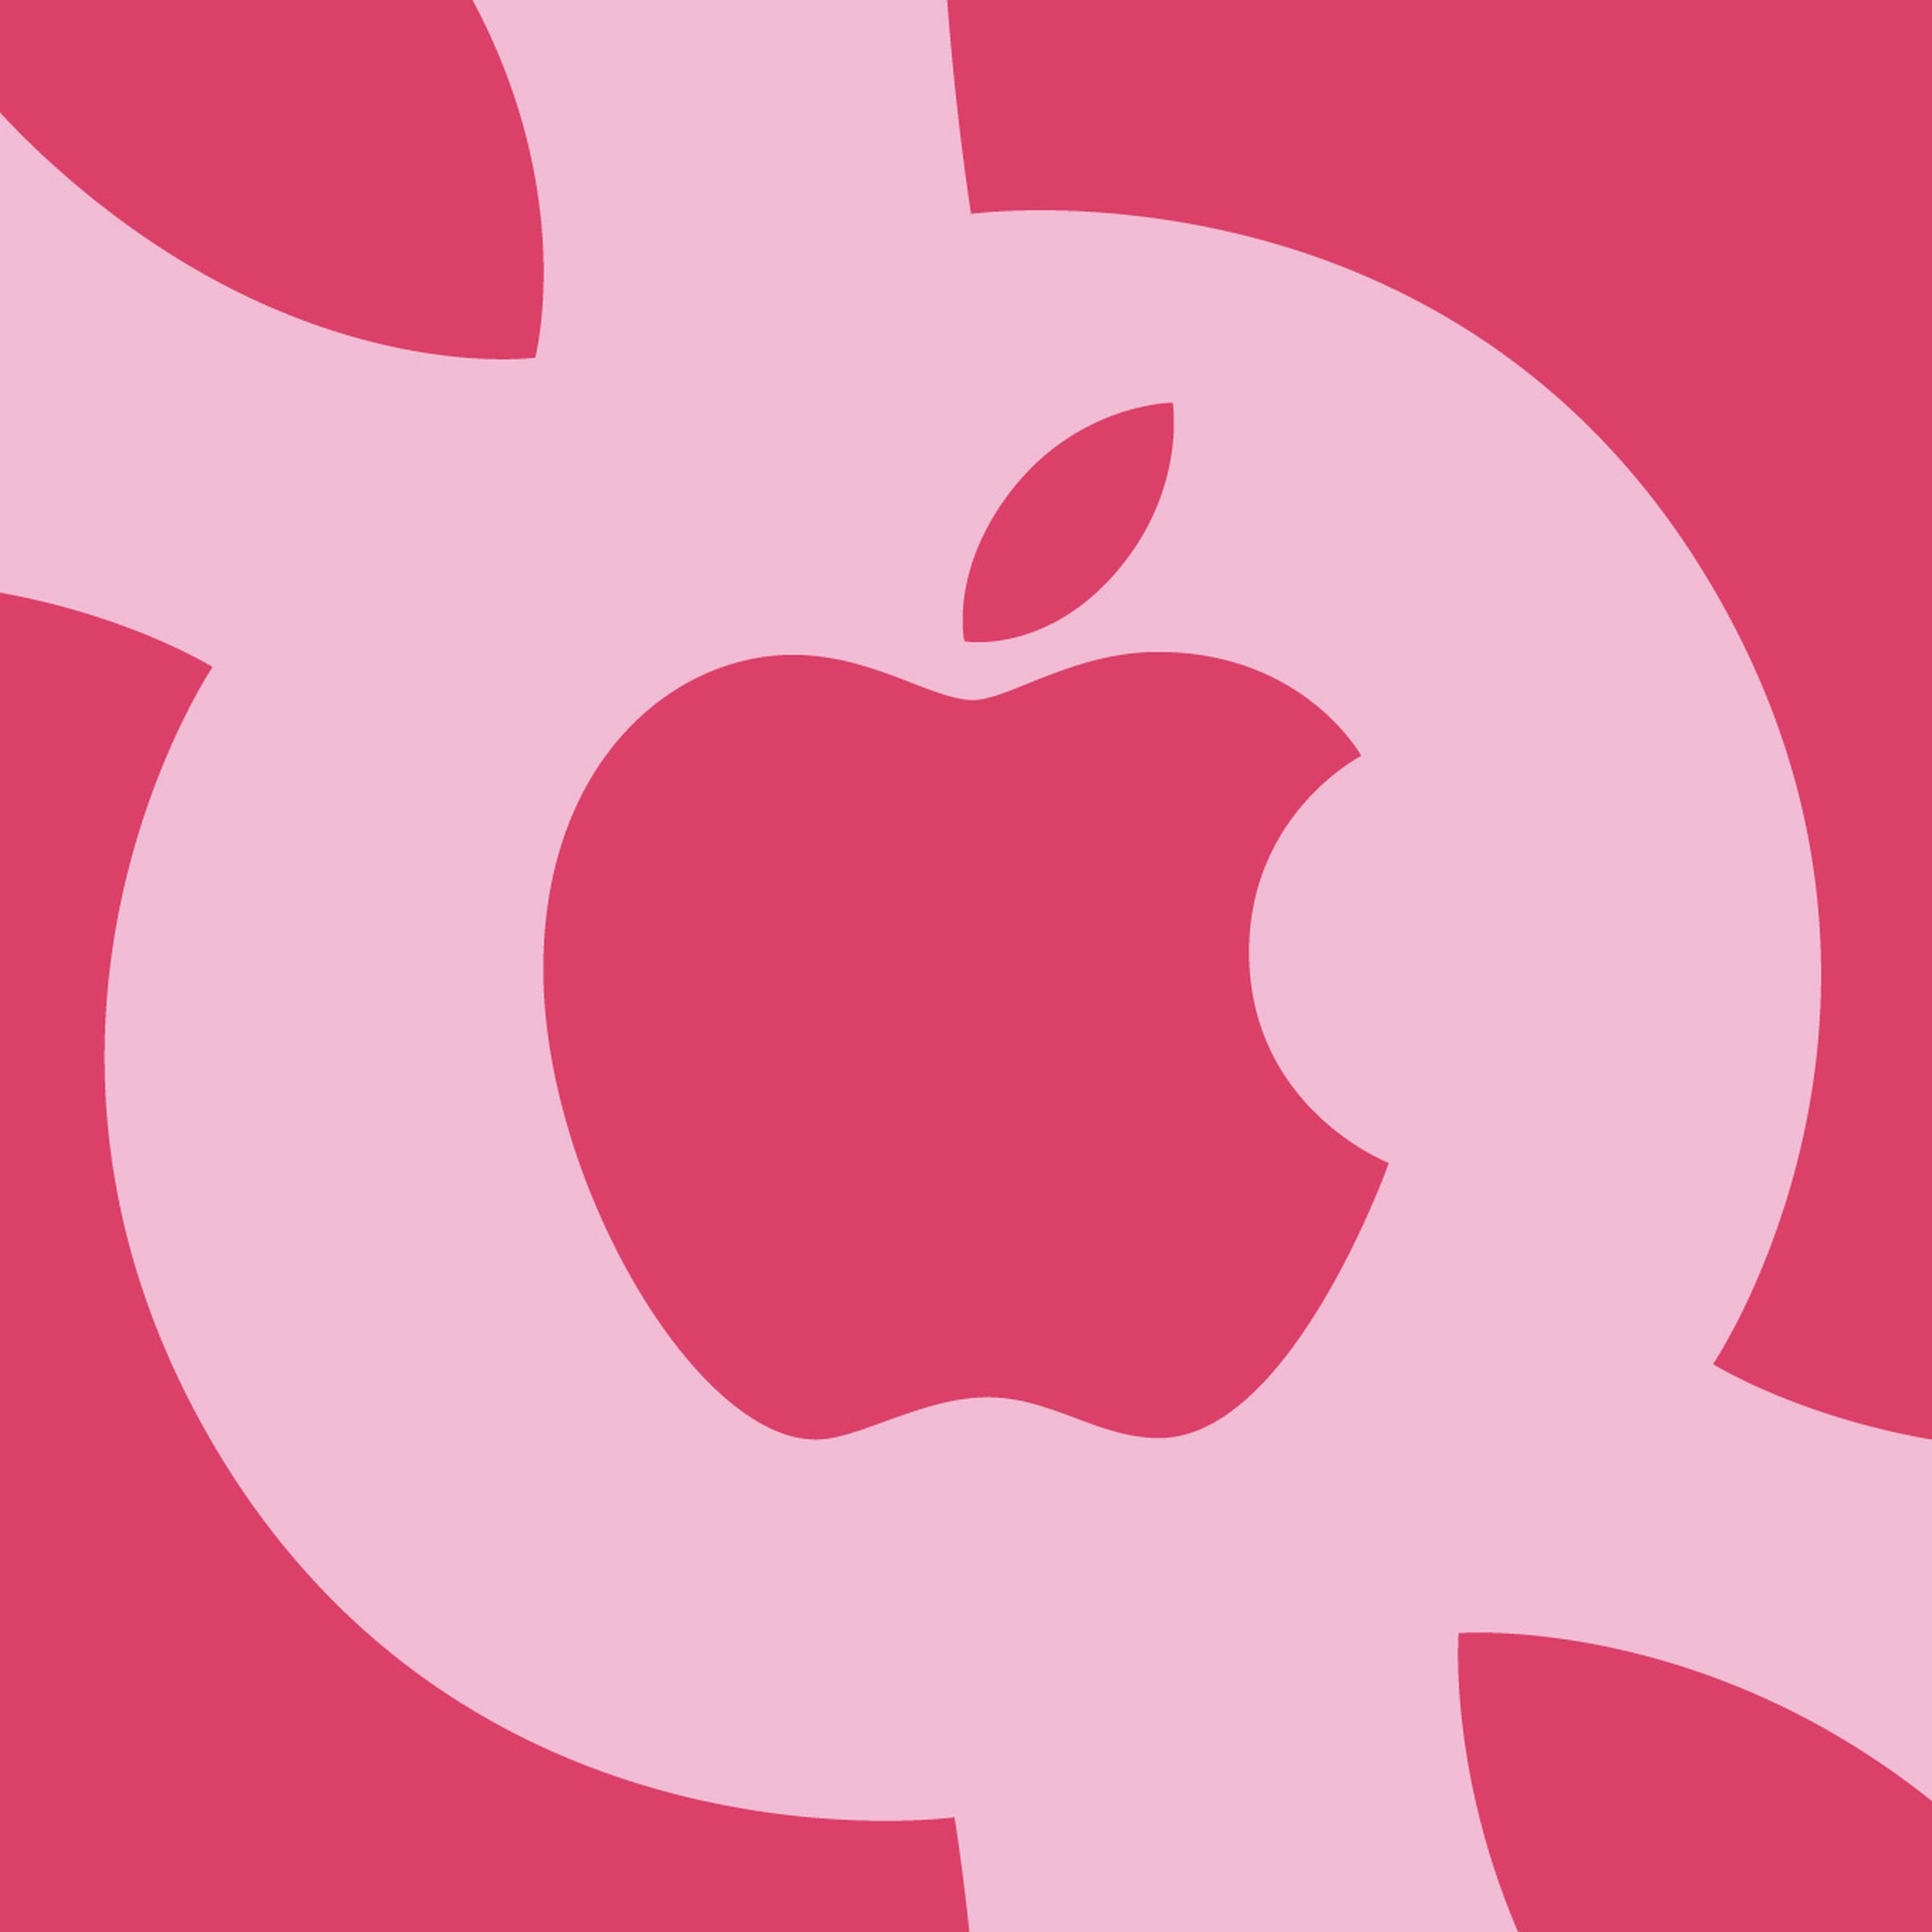 Pink Apple logos